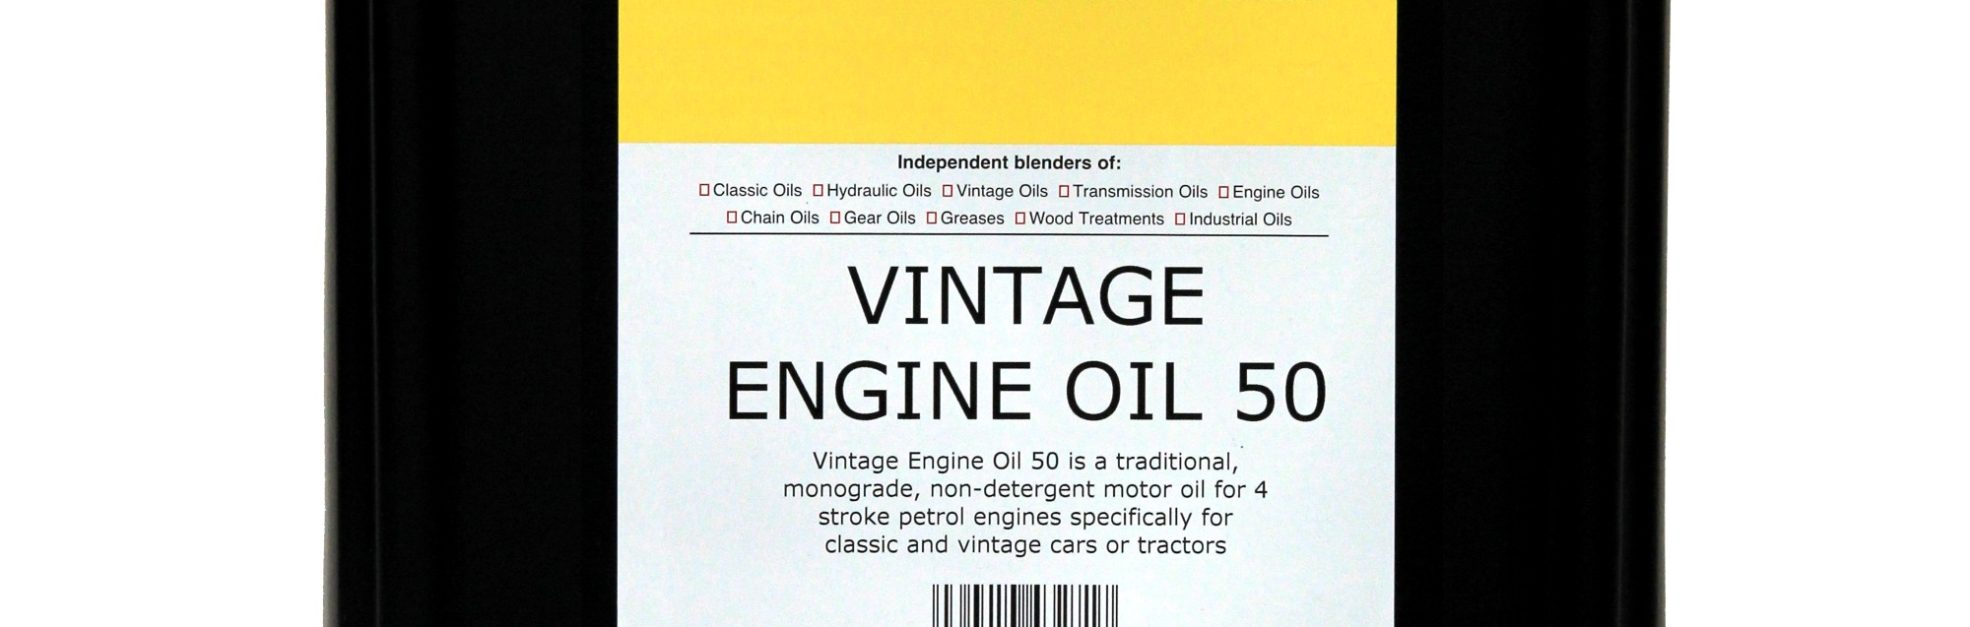 VINTAGE ENGINE OIL 50